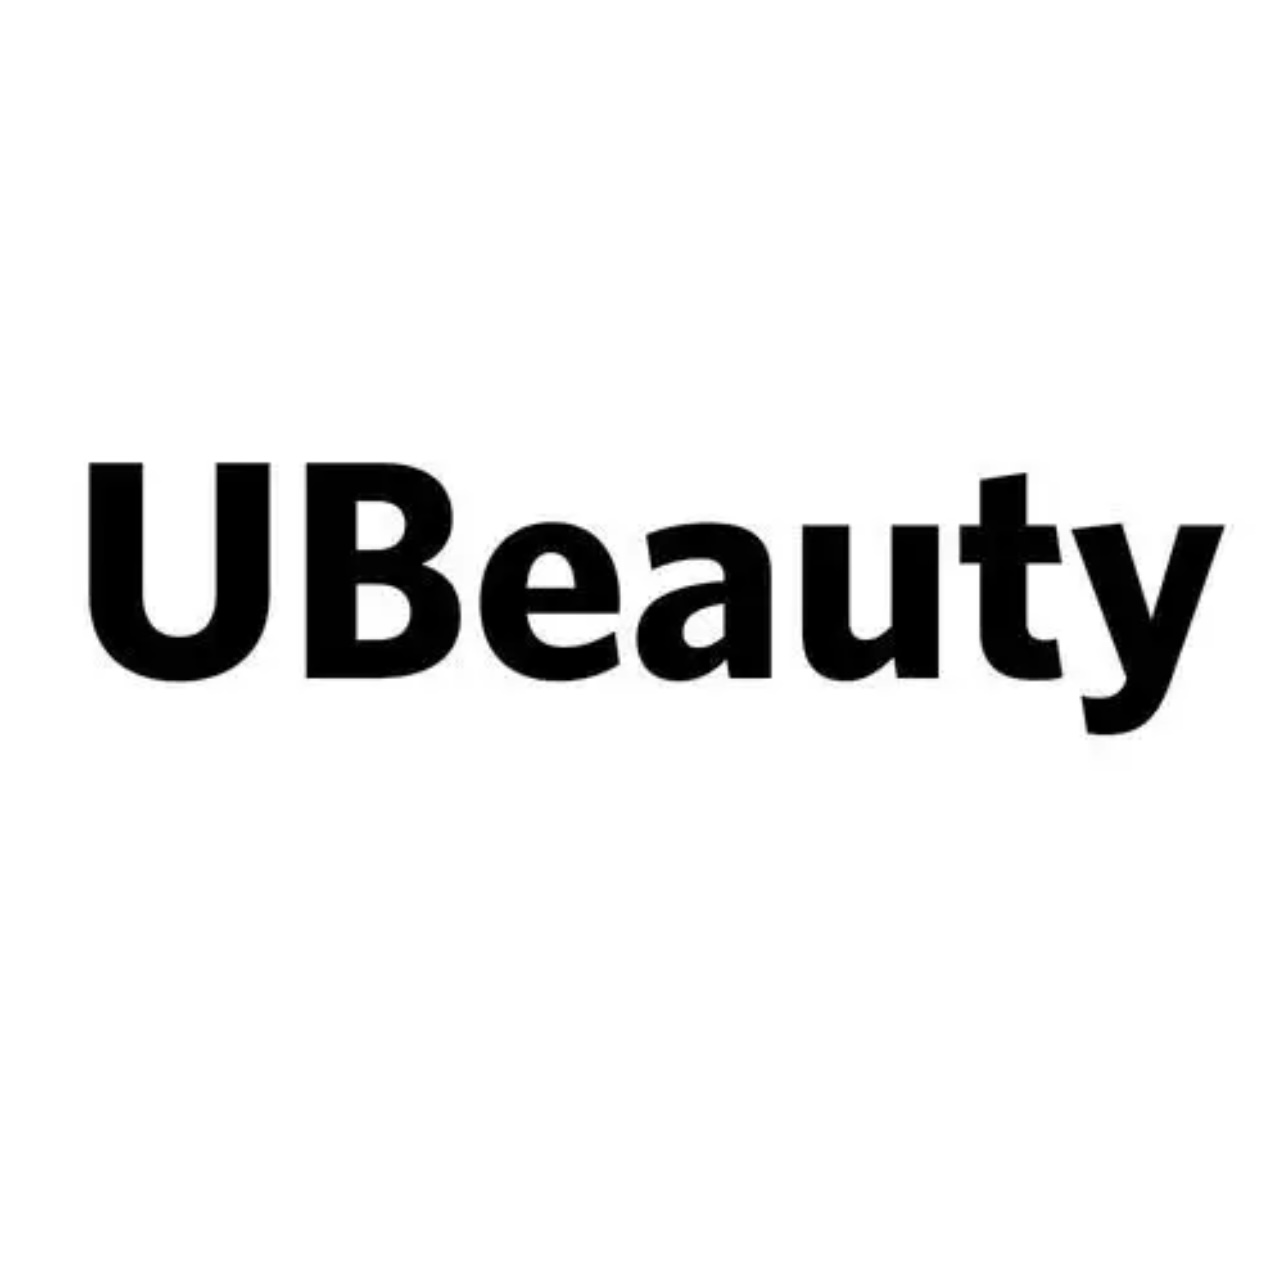 U Beauty